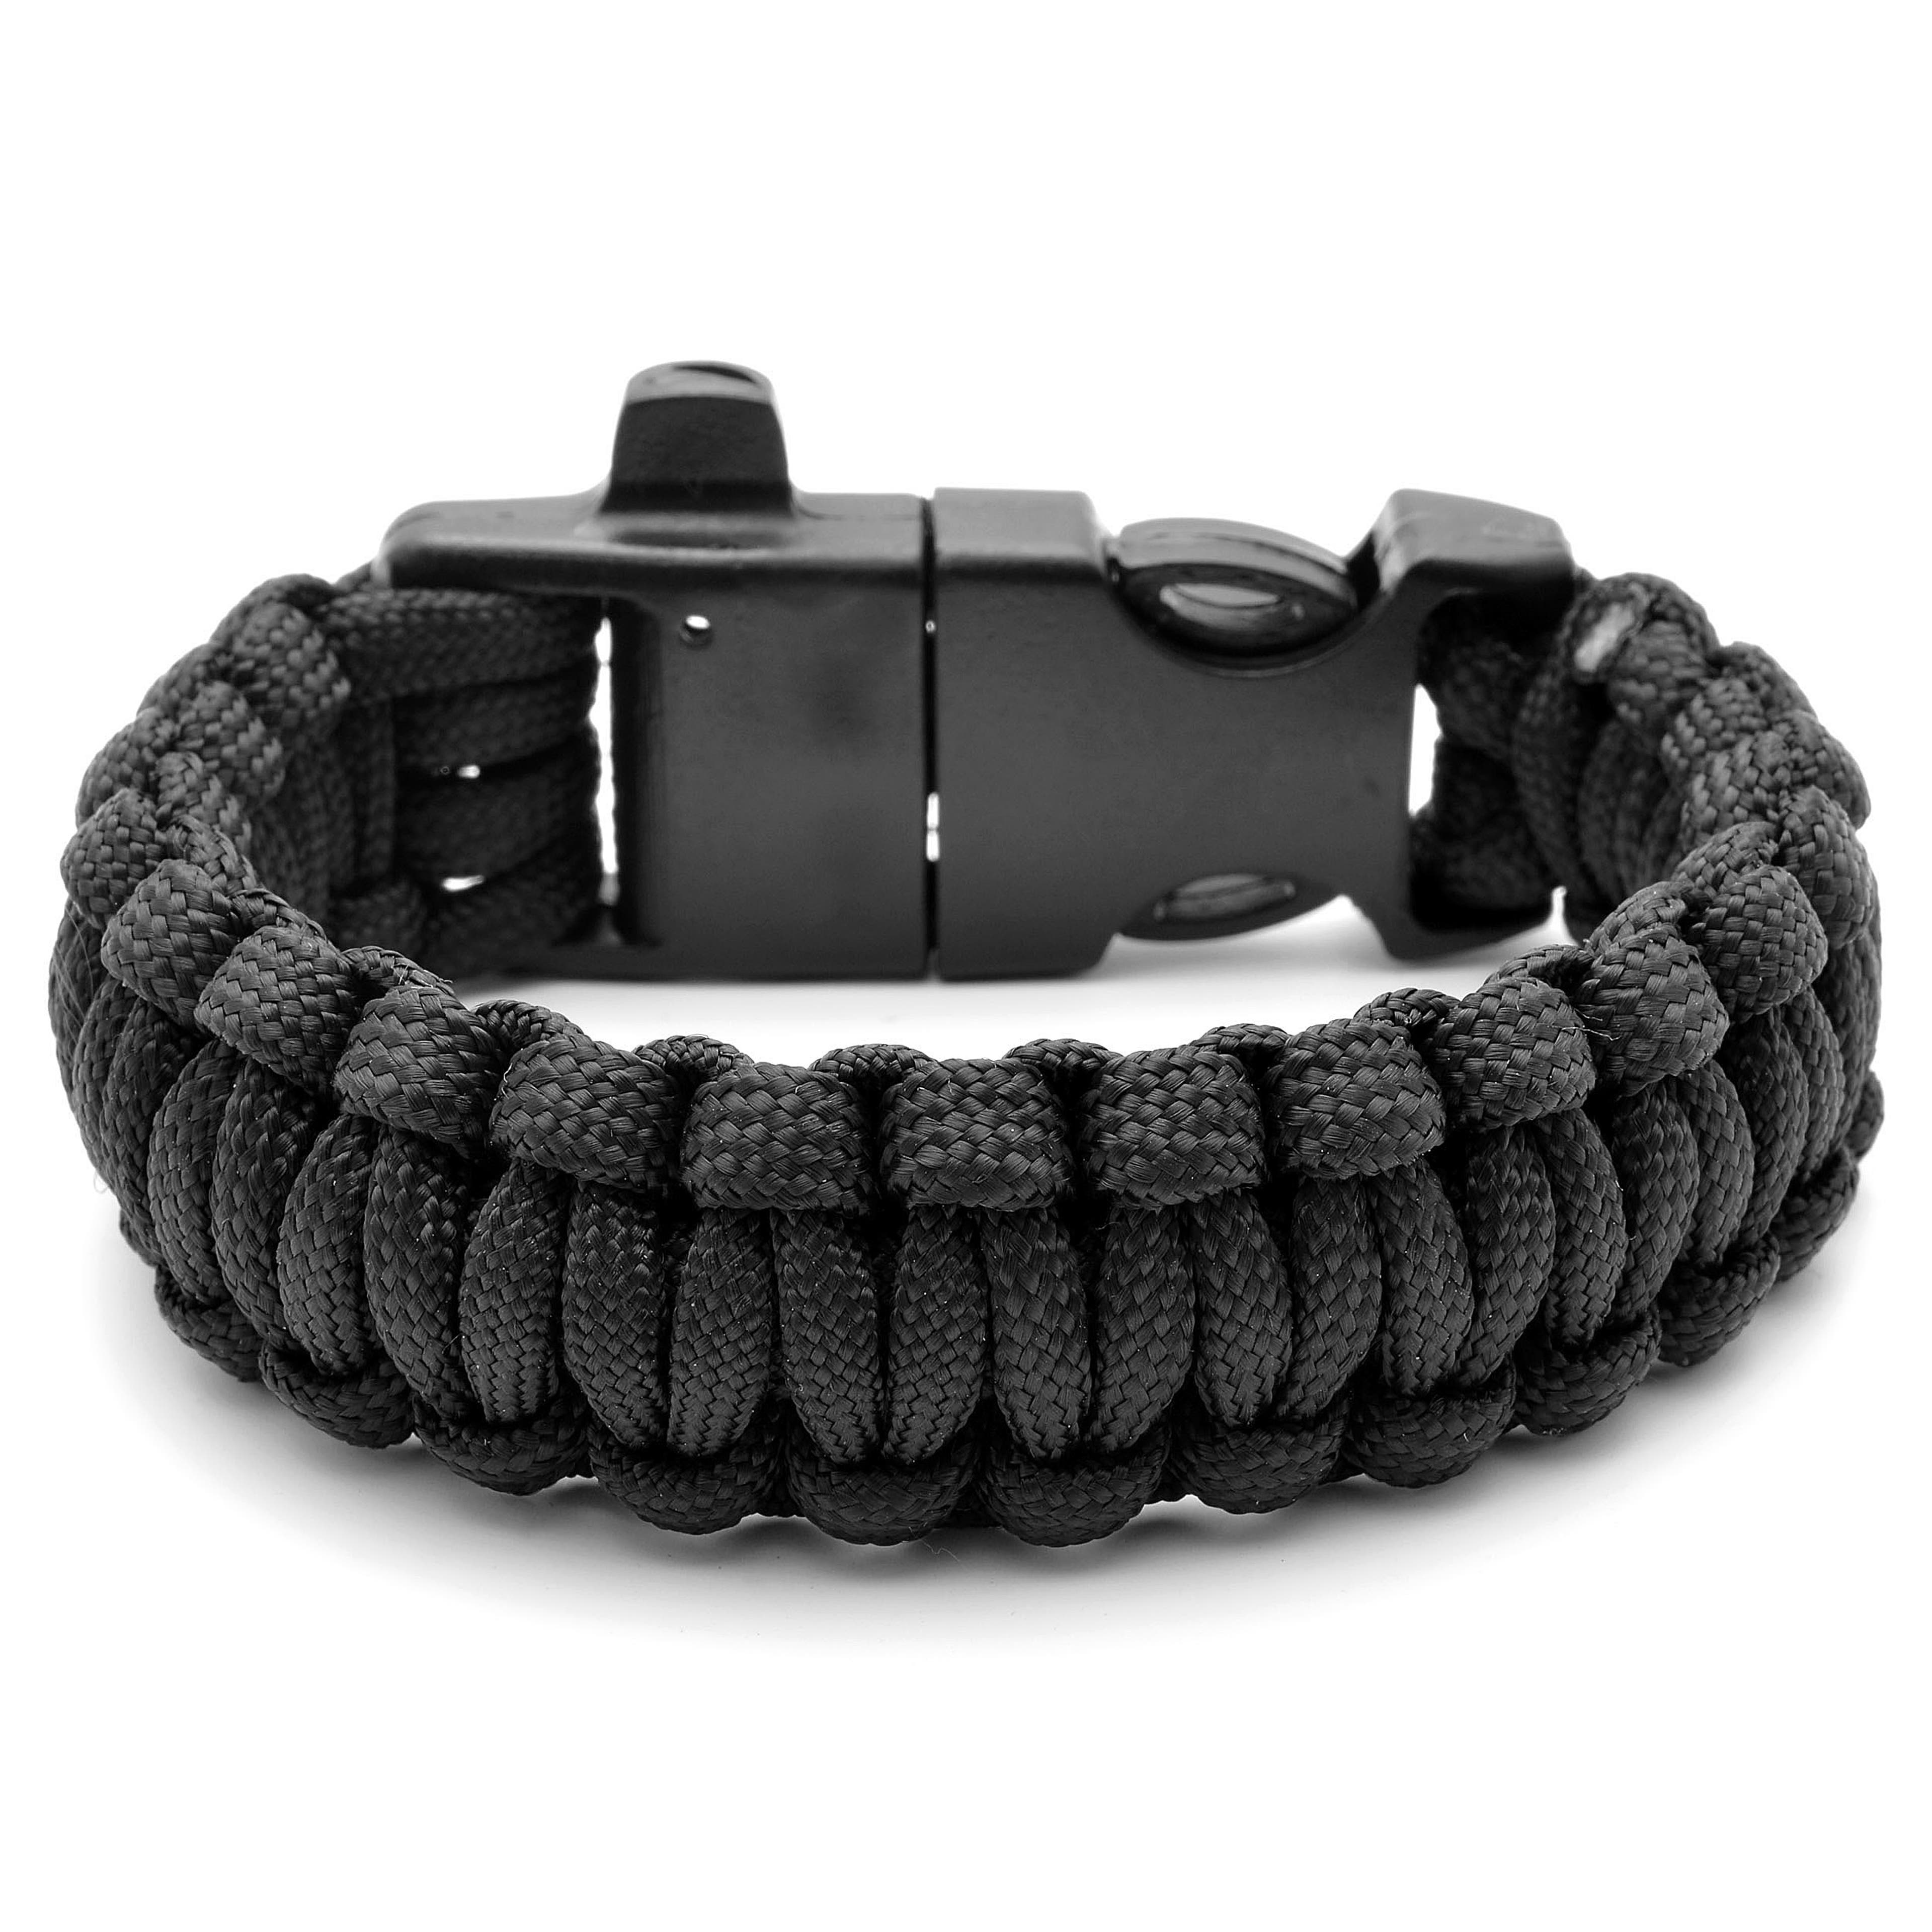 Black Paracord Bracelet With Steel Firestarter